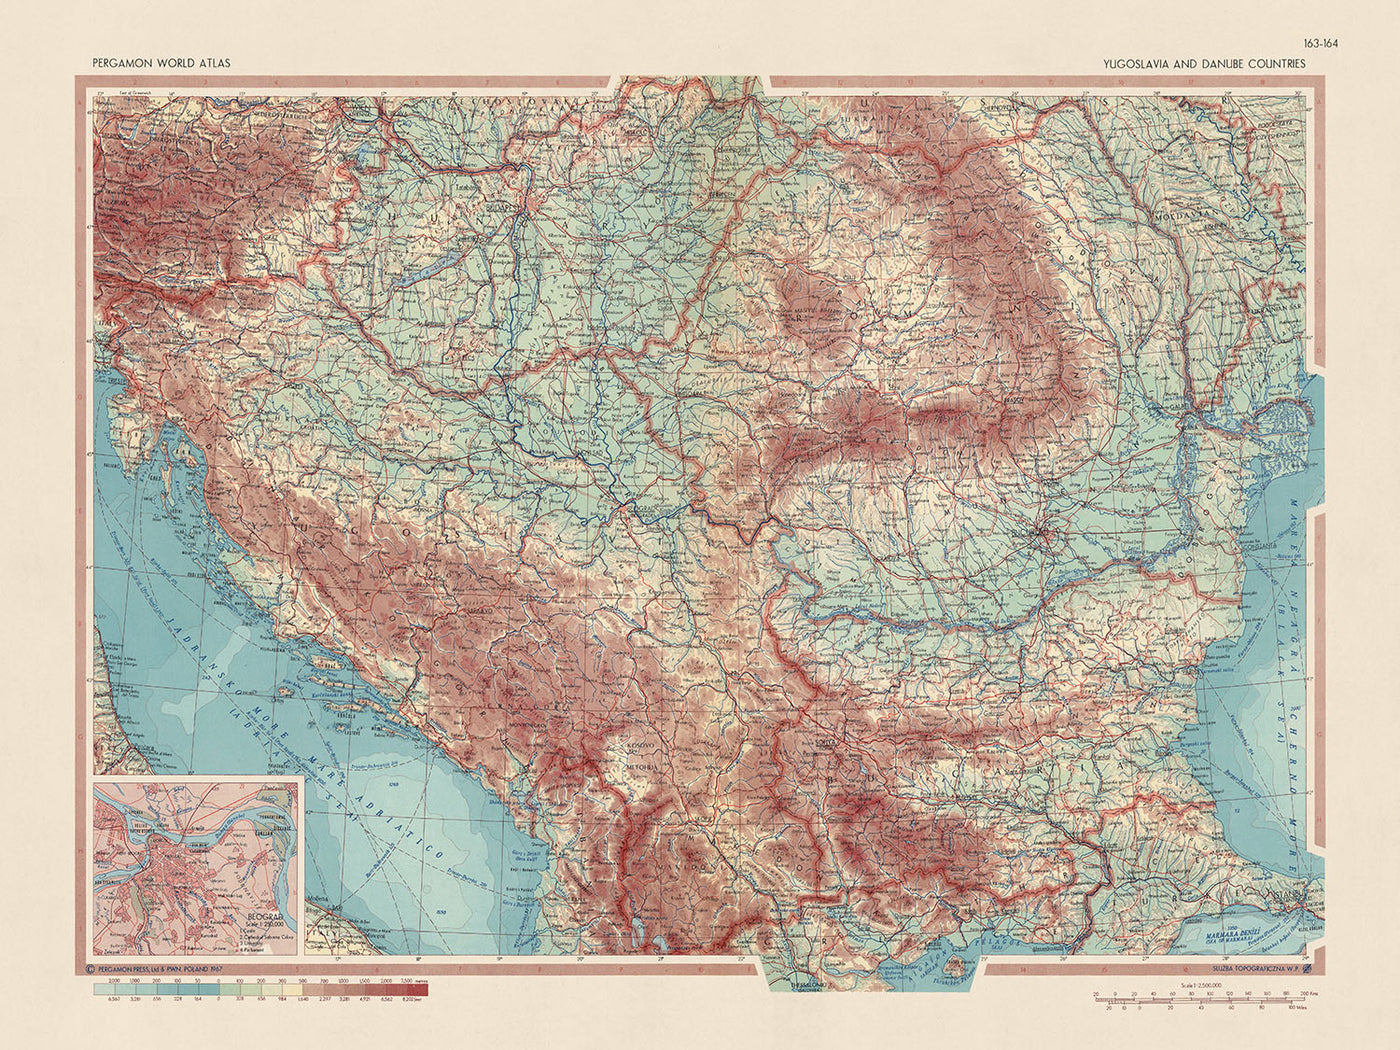 Alte Weltkarte von Jugoslawien und den Donauländern vom Topografischen Dienst der polnischen Armee, 1967: Detaillierte politische und physische Karte, Einschub von Belgrad, Mercator-Projektion